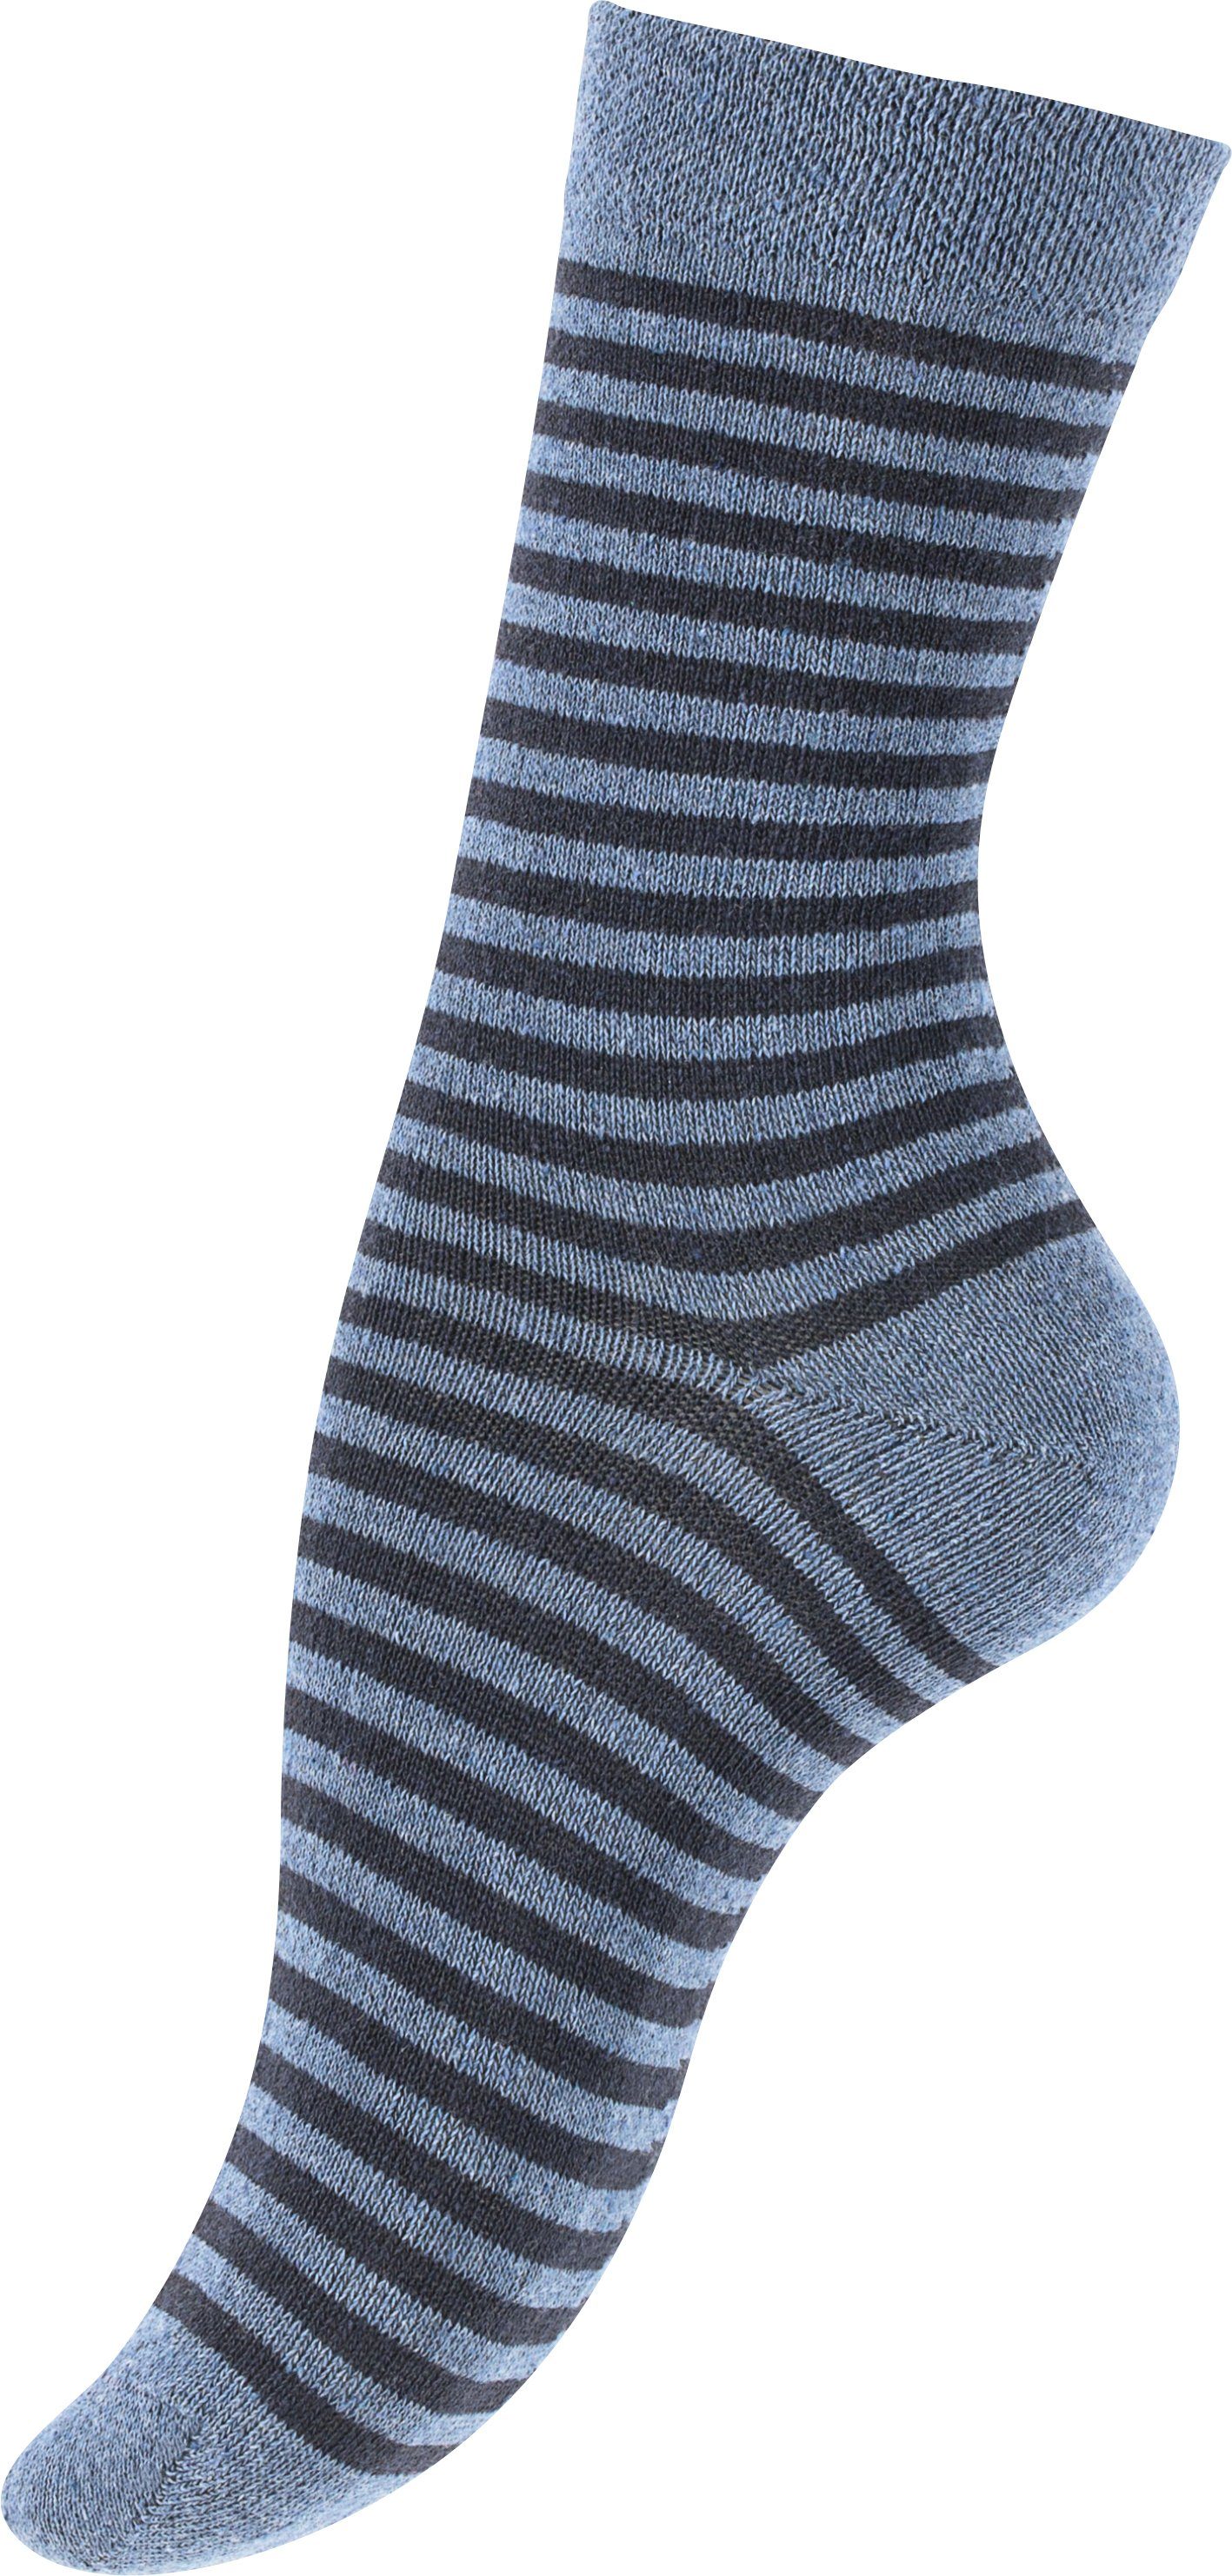 Socken blau Creation® in Jeans Vincent angenehmer Baumwollqualität (10-Paar)